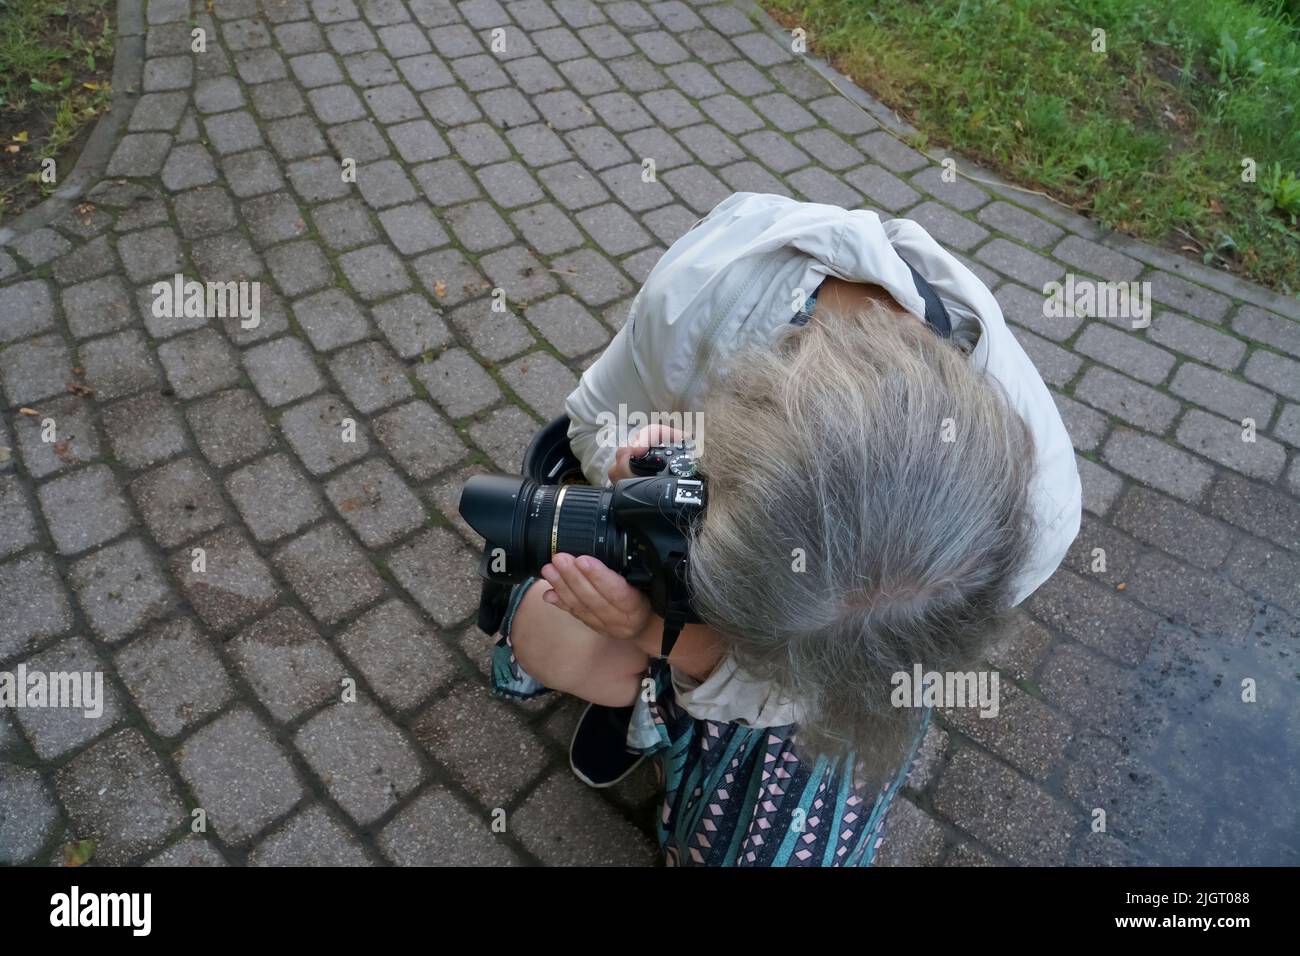 Fotografo in azione. Signora con una fotocamera alla ricerca di una scena per una foto. La fotografia come hobby, passione e professione della gente. Foto Stock